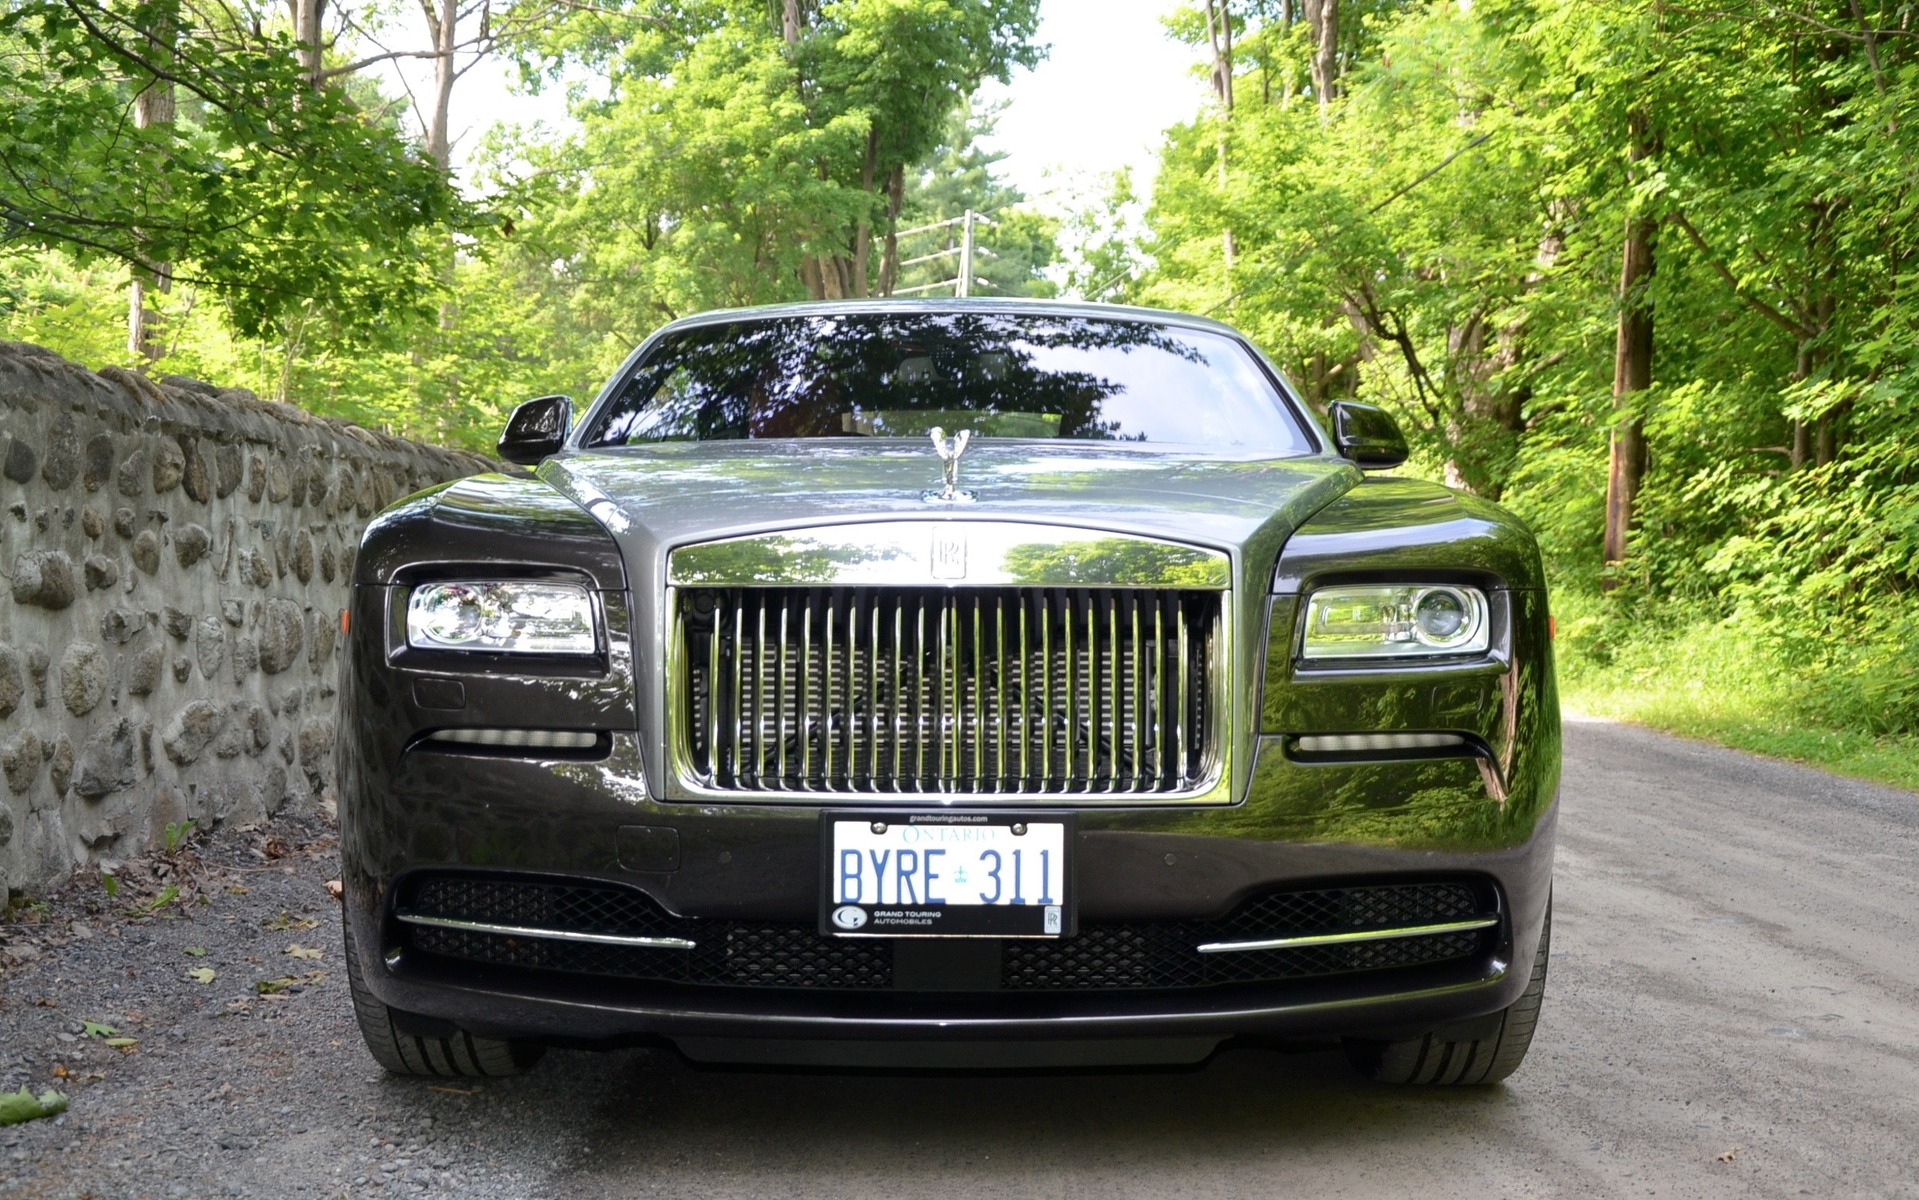 Rolls-Royce Wraith 2016 : un gabarit hors normes et une calandre imposante.